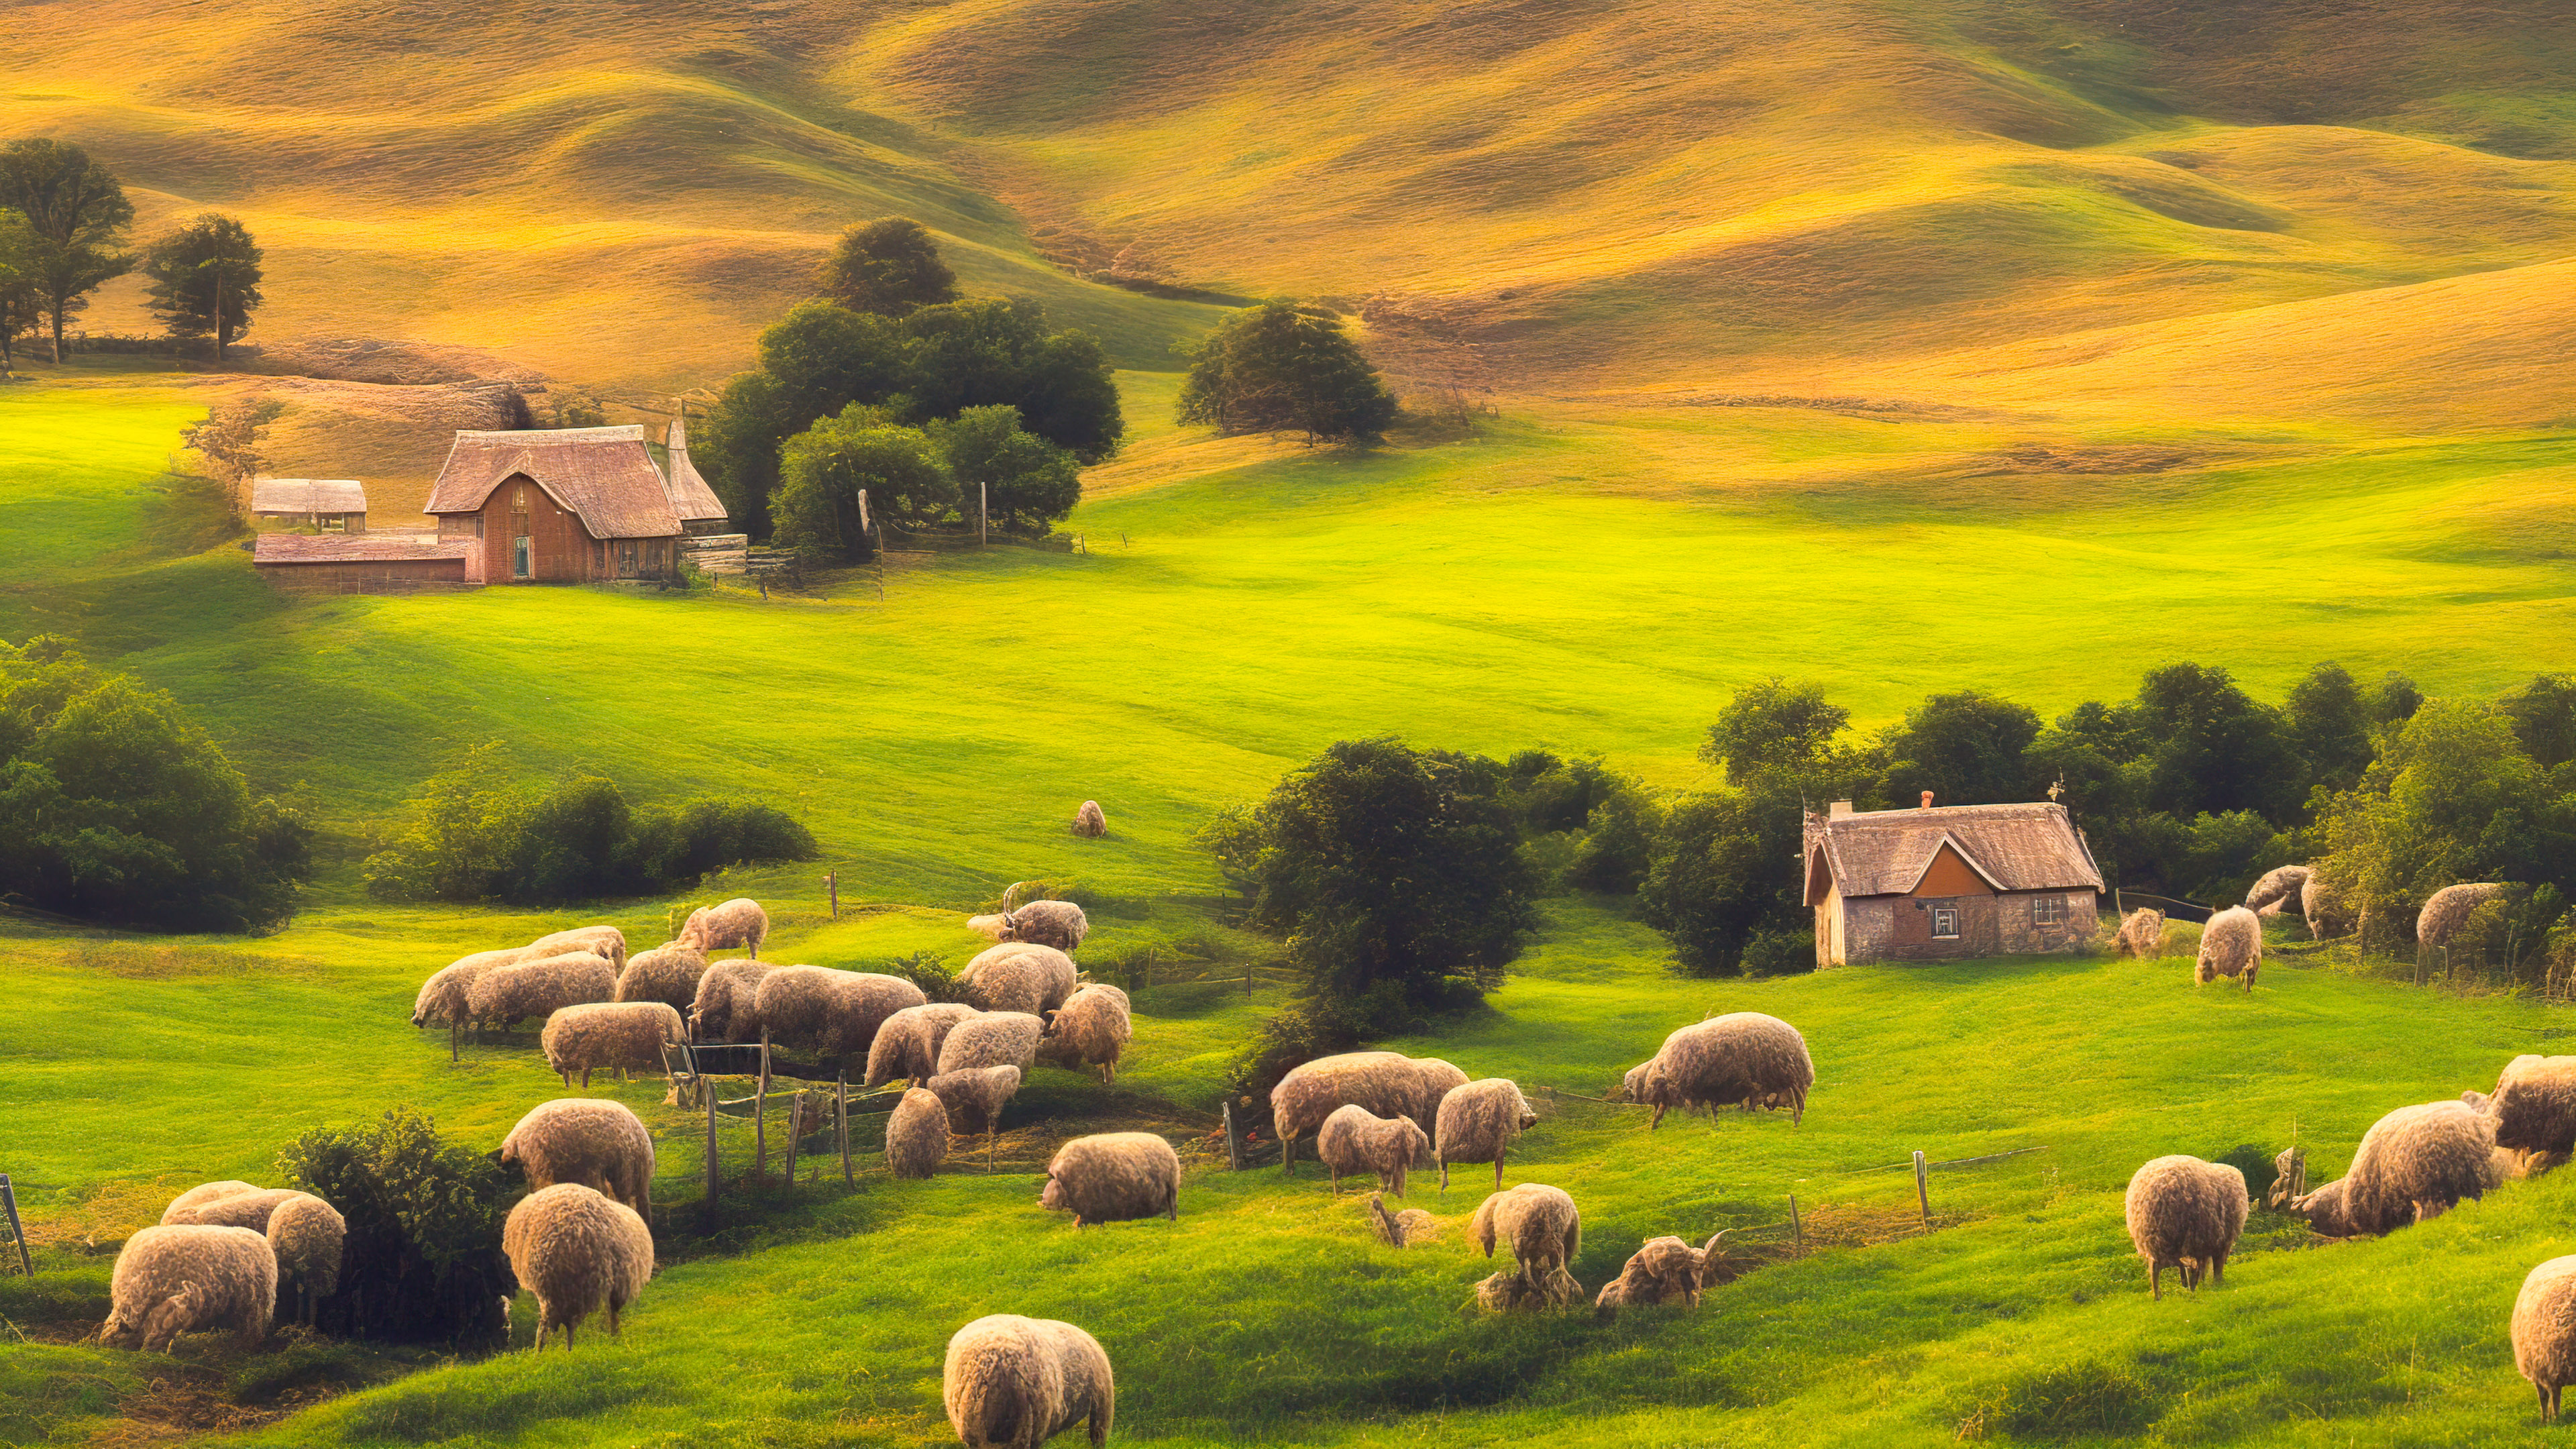 Téléchargez la sérénité de notre fond d'écran de bureau en 4K de paysage, capturant une paisible maison de campagne nichée parmi des collines ondulantes, entourée de moutons qui paissent.